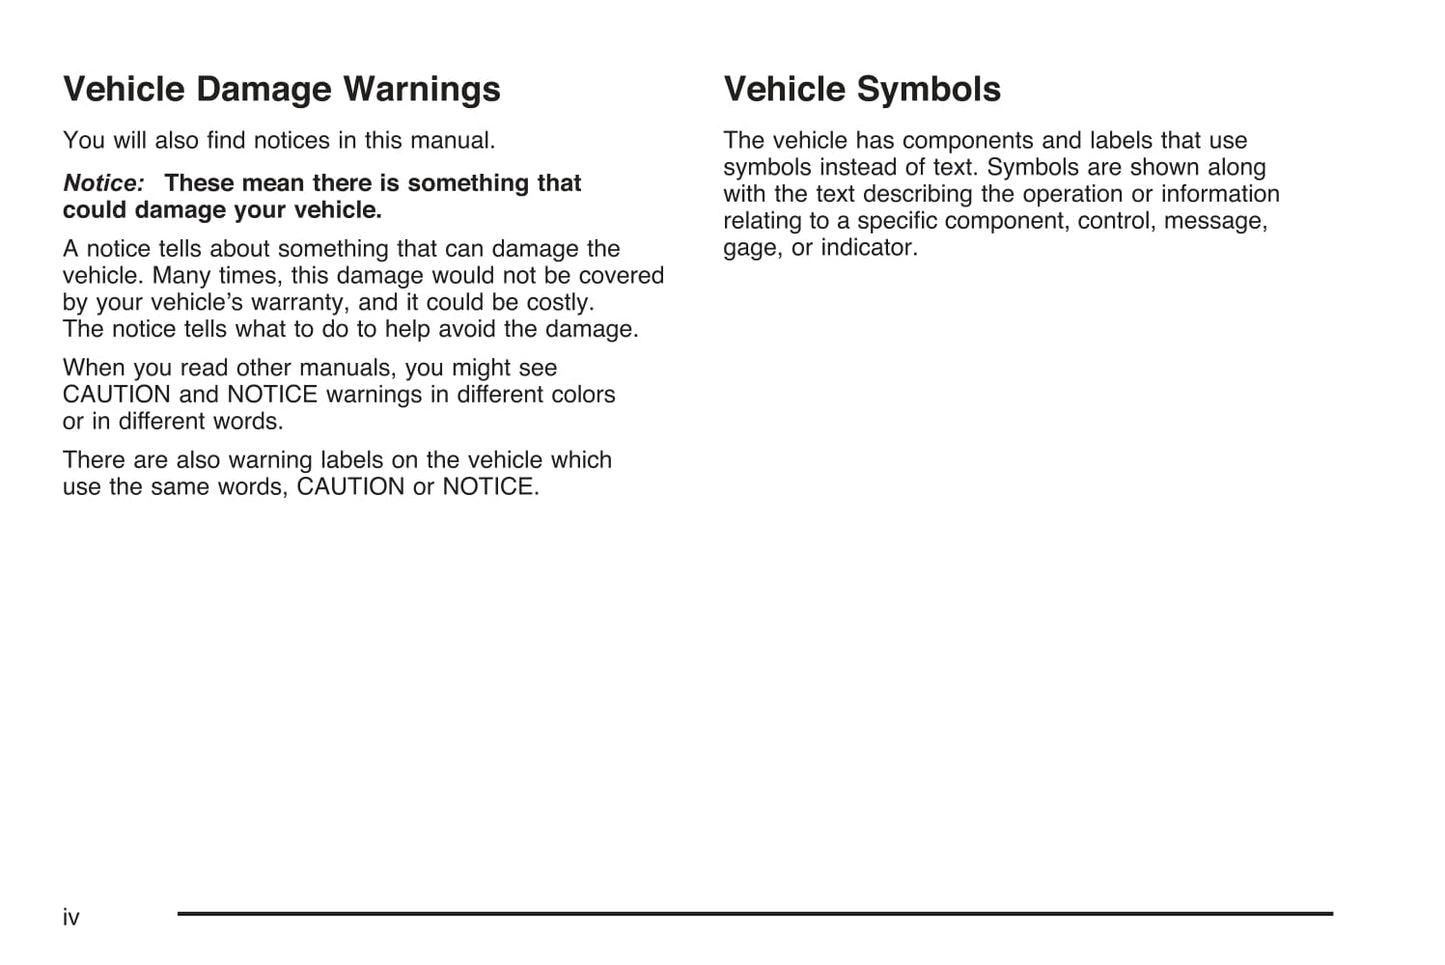 2008 Cadillac Escalade Owner's Manual | English